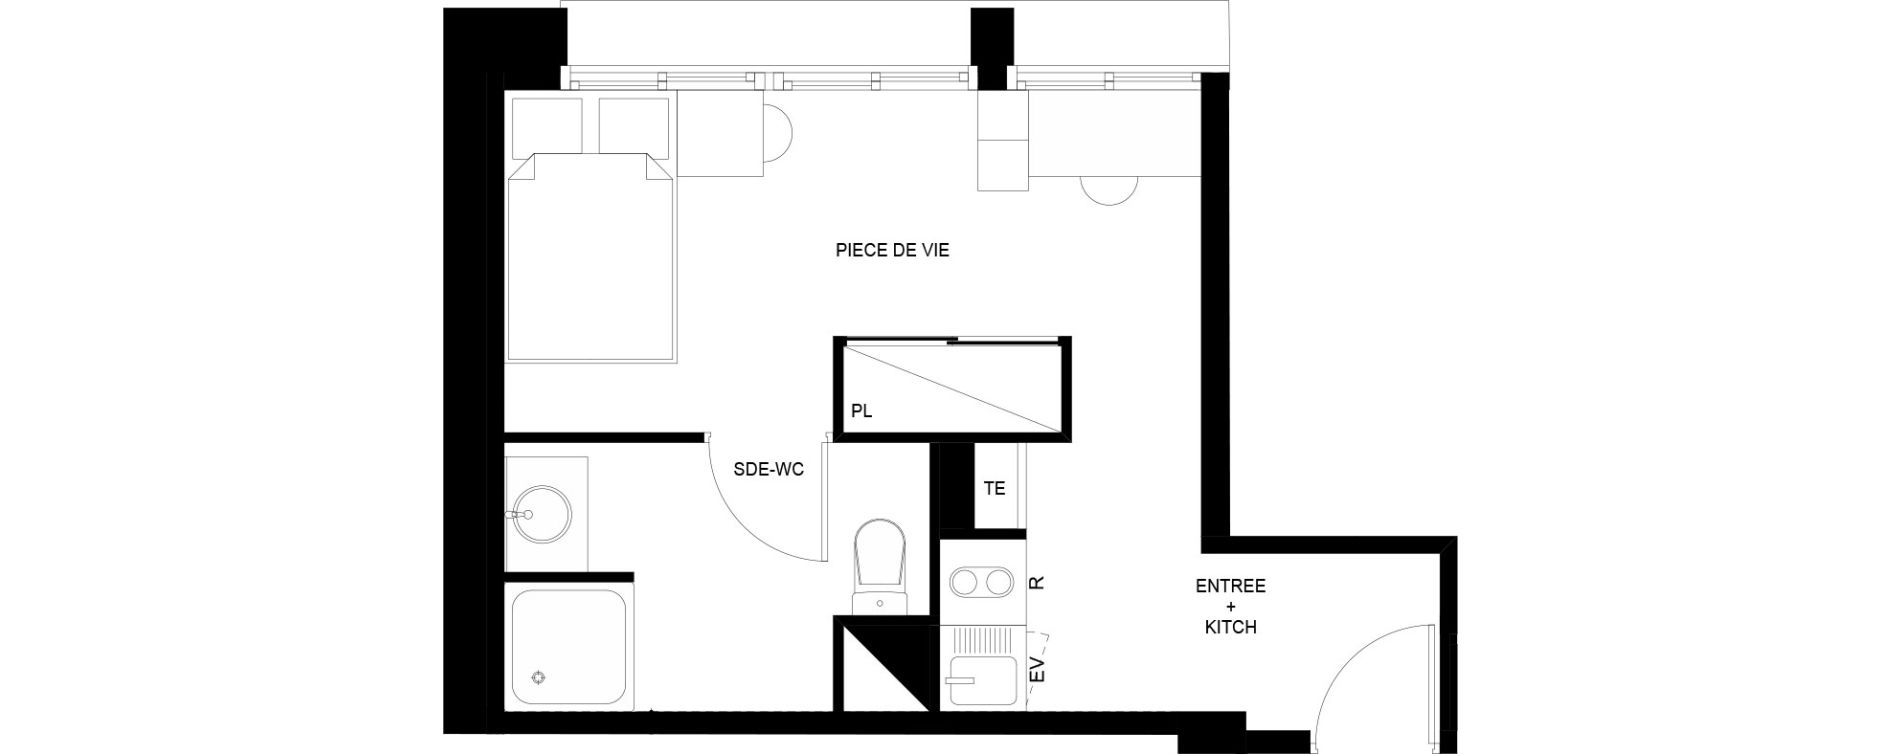 Appartement T1 meubl&eacute; de 21,64 m2 au Mans Nationale